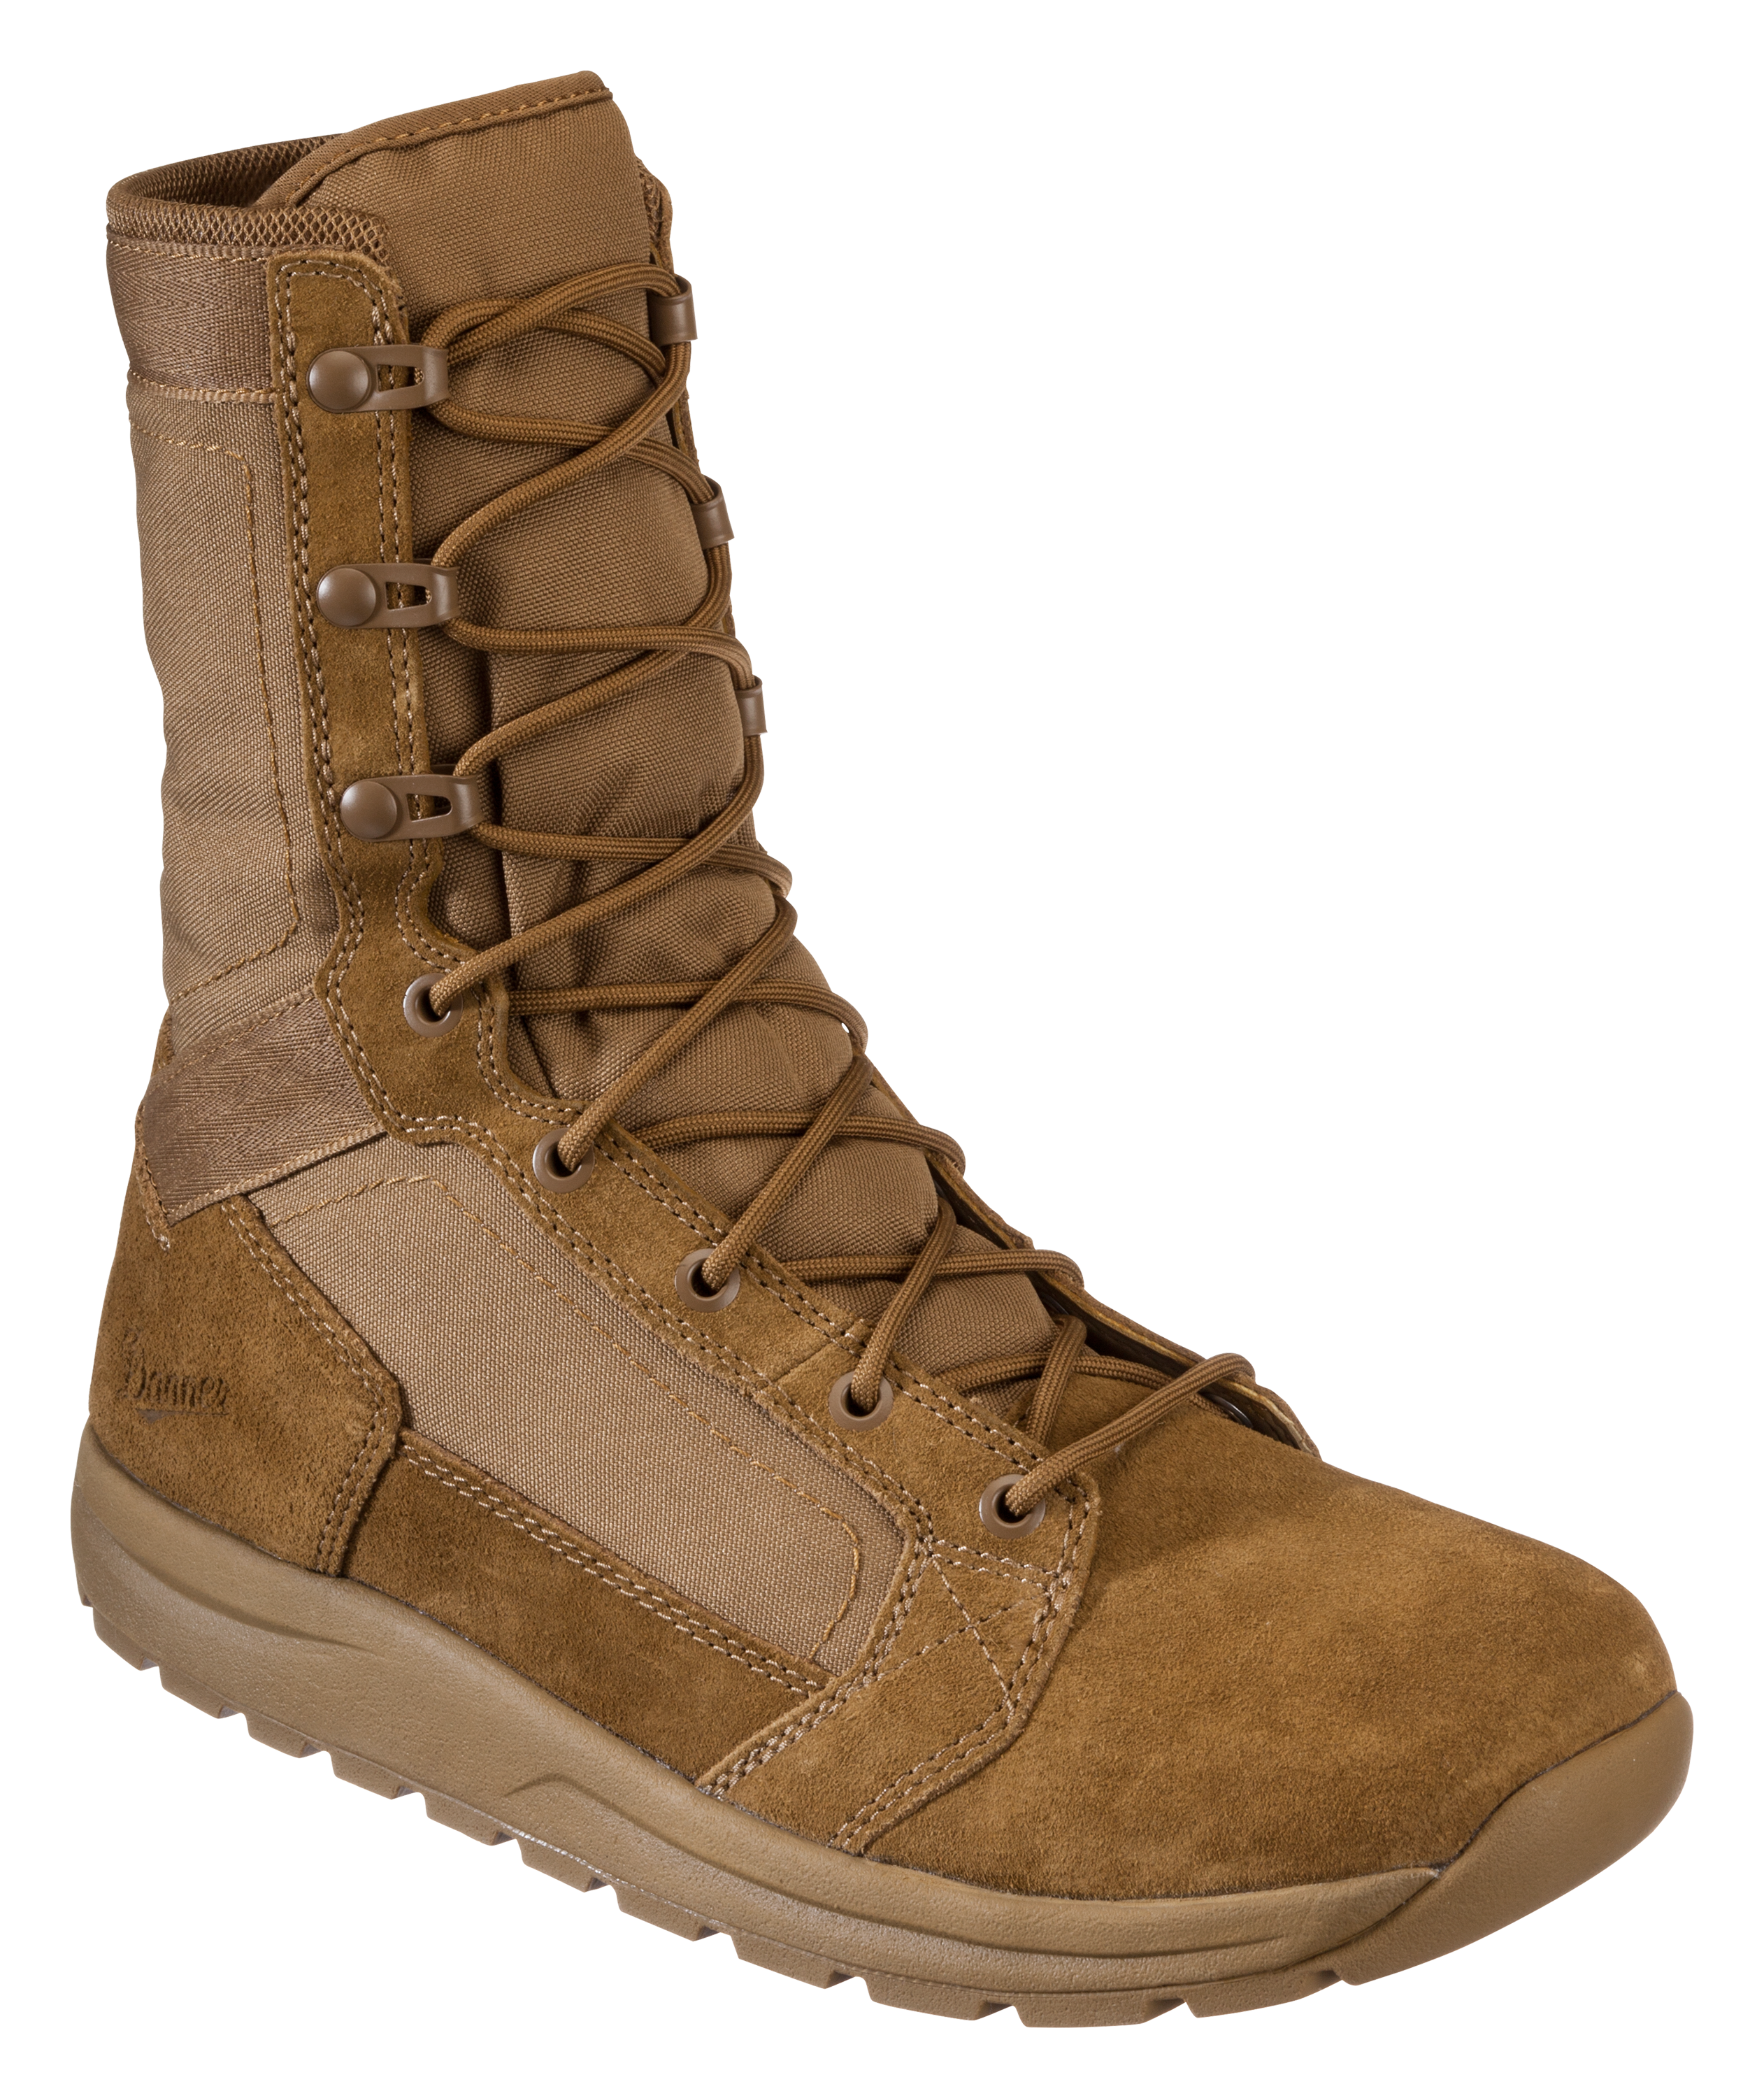 Danner Tachyon Tactical Boots for Men - Coyote - 12M